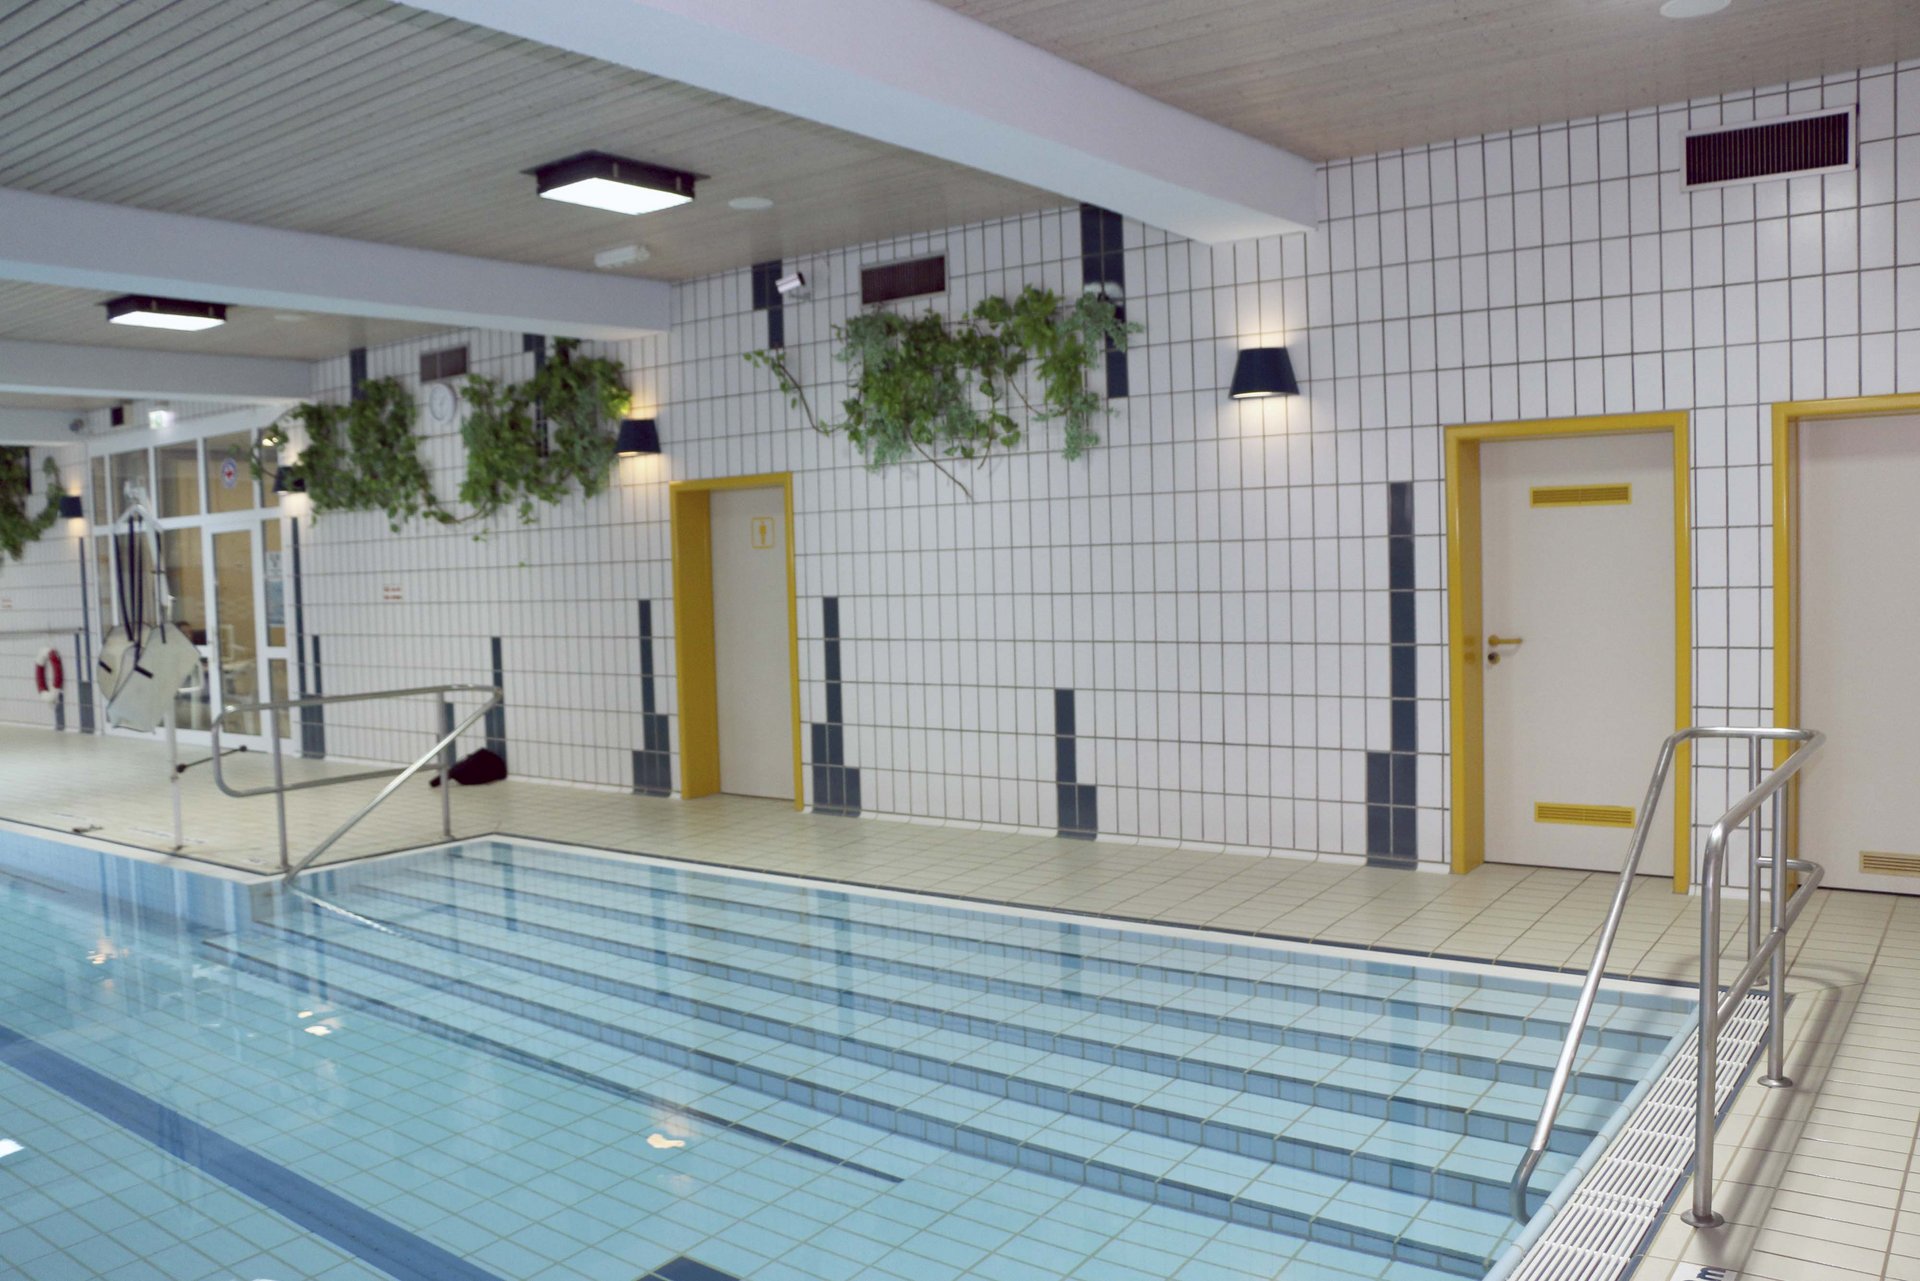 Bild: Schwimmbecken des Hallenbads Mitterteich